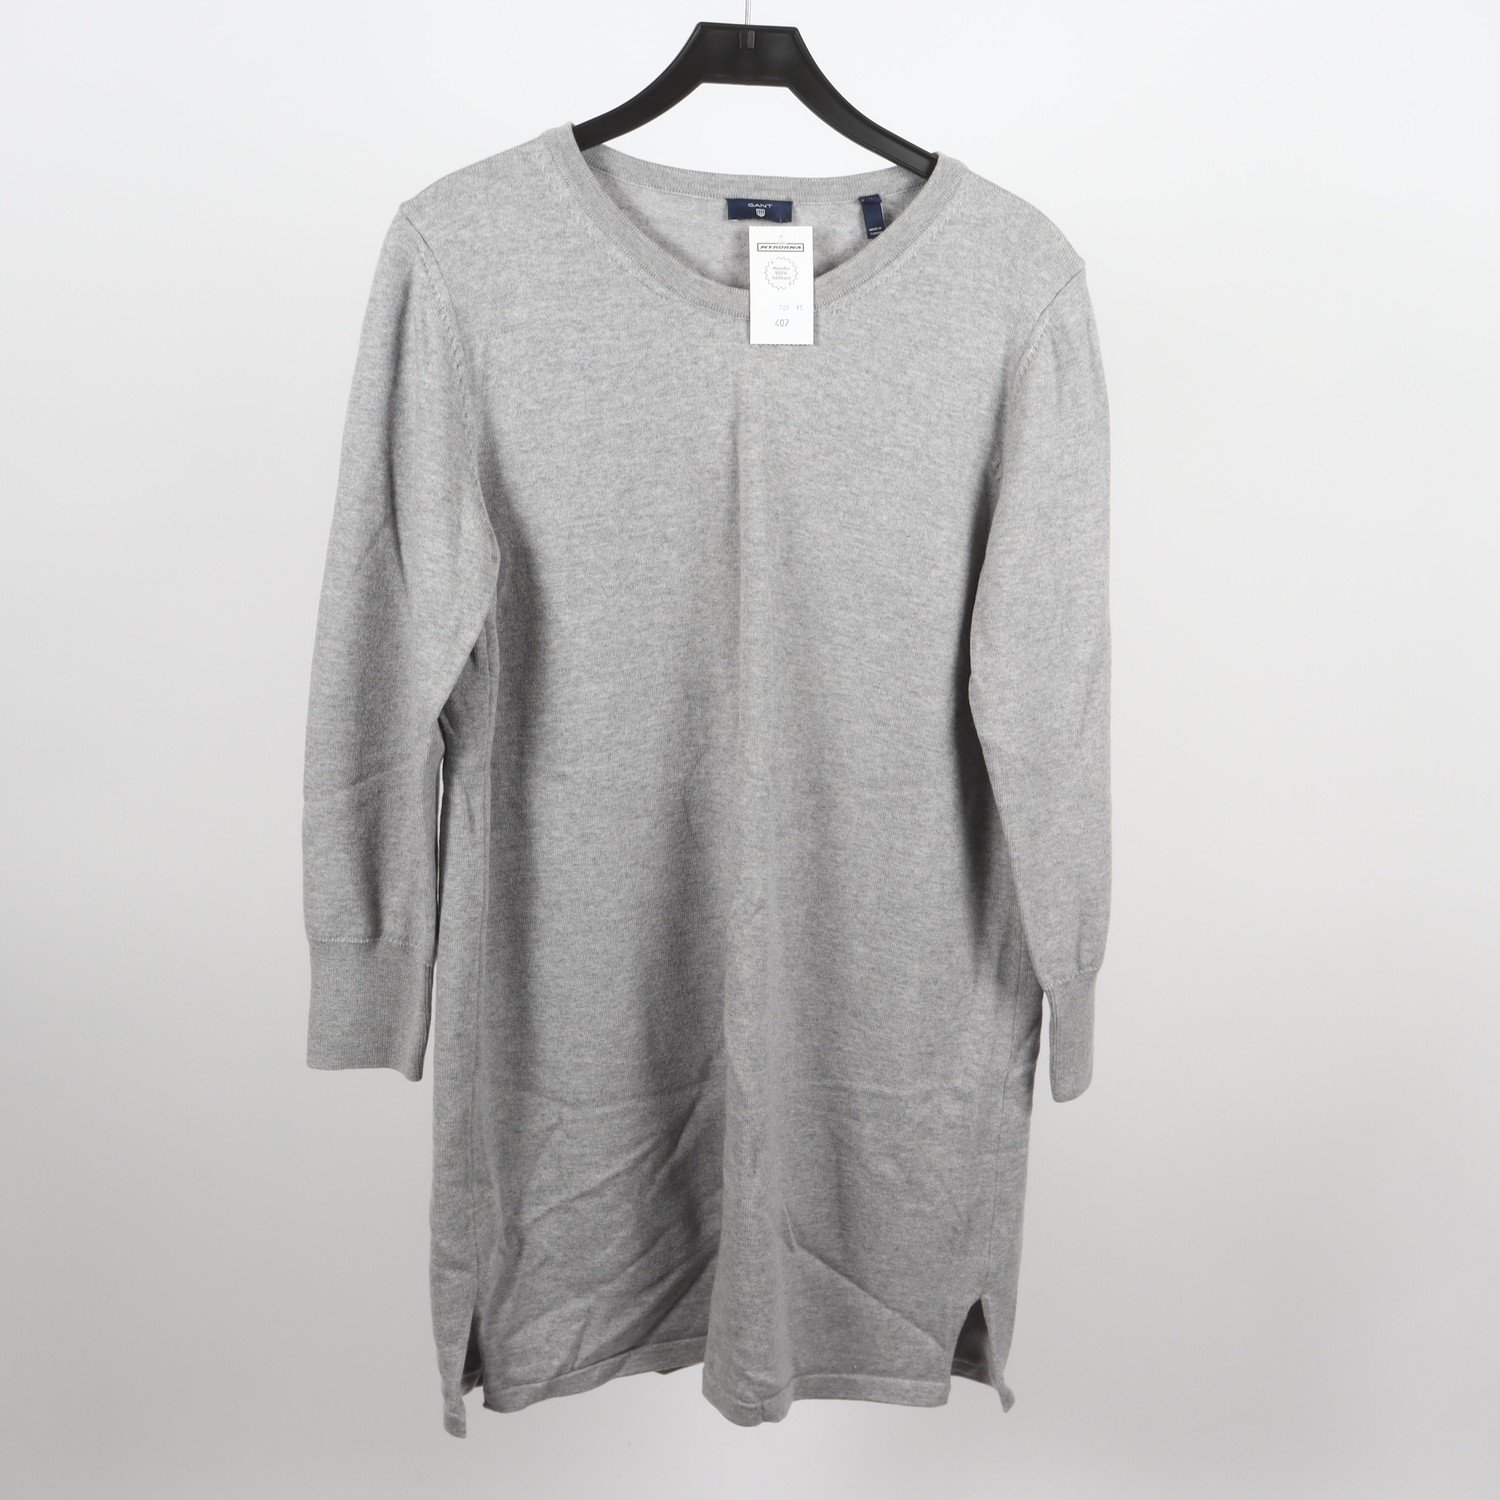 Klänning, Gant, grå, 100% ull, stl. XL